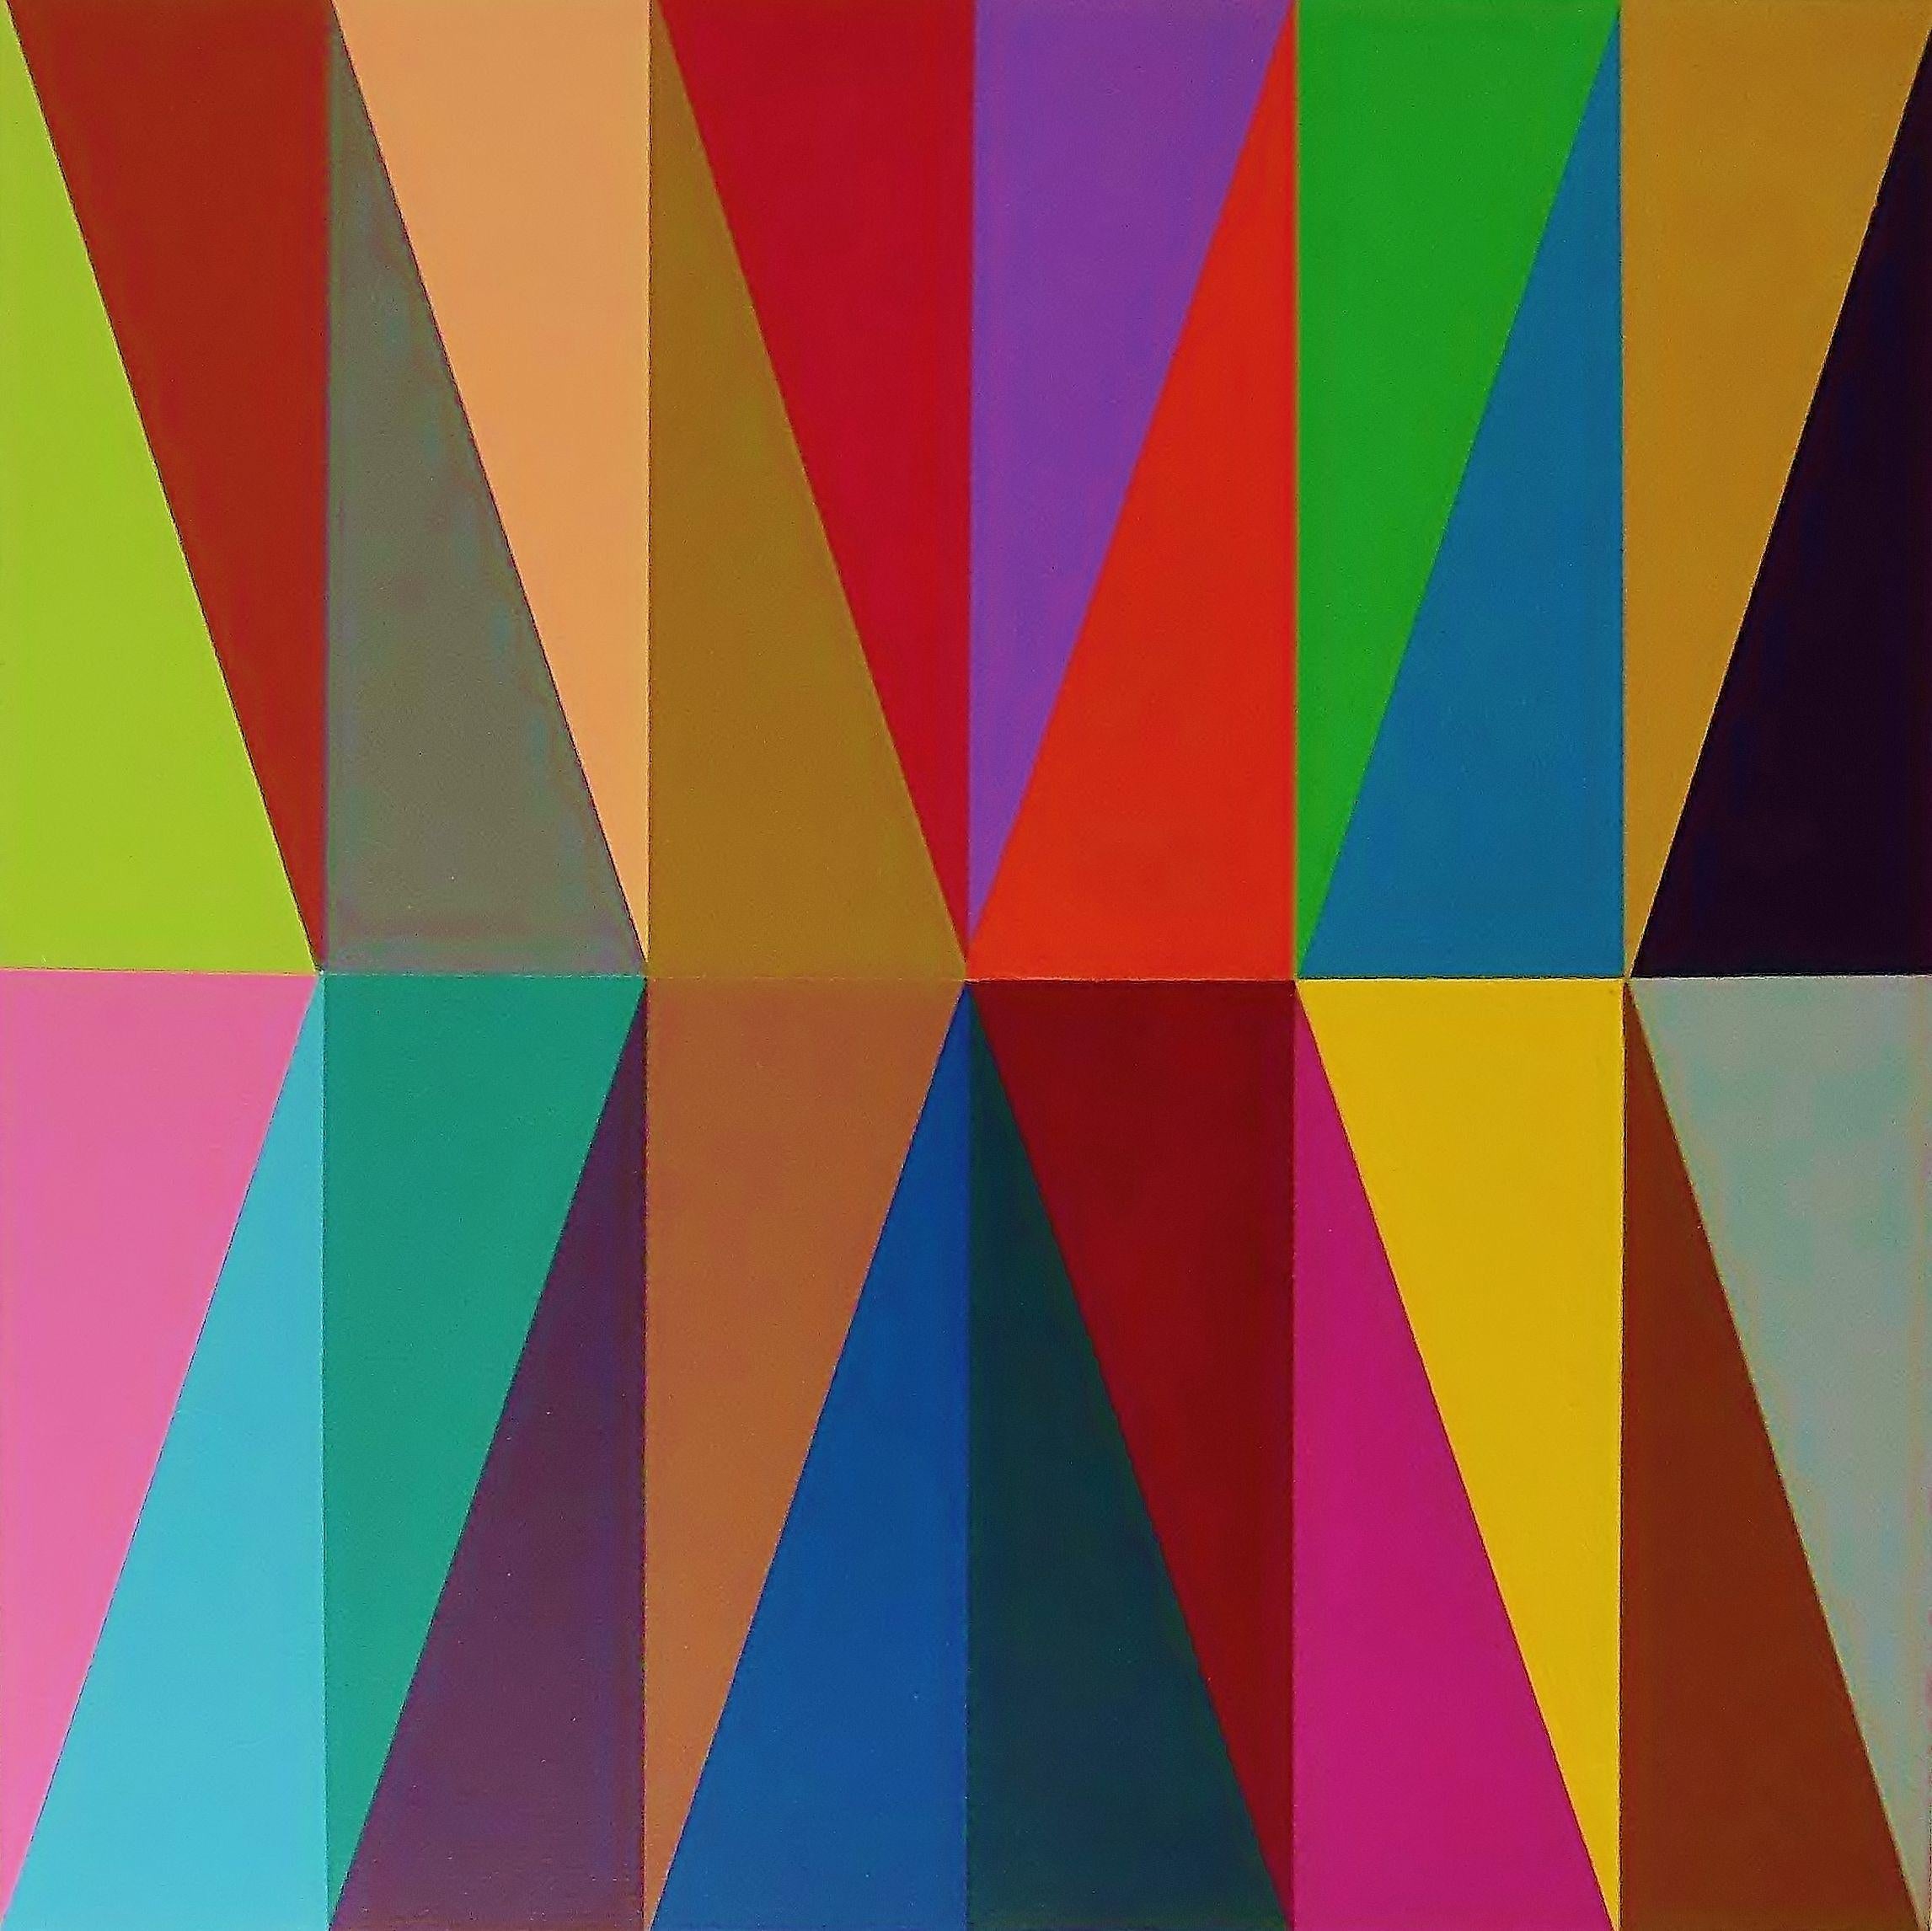 Abstract Painting Juan Jose Hoyos Quiles - Triangulation II, 2019, peinture, acrylique sur panneau de bois